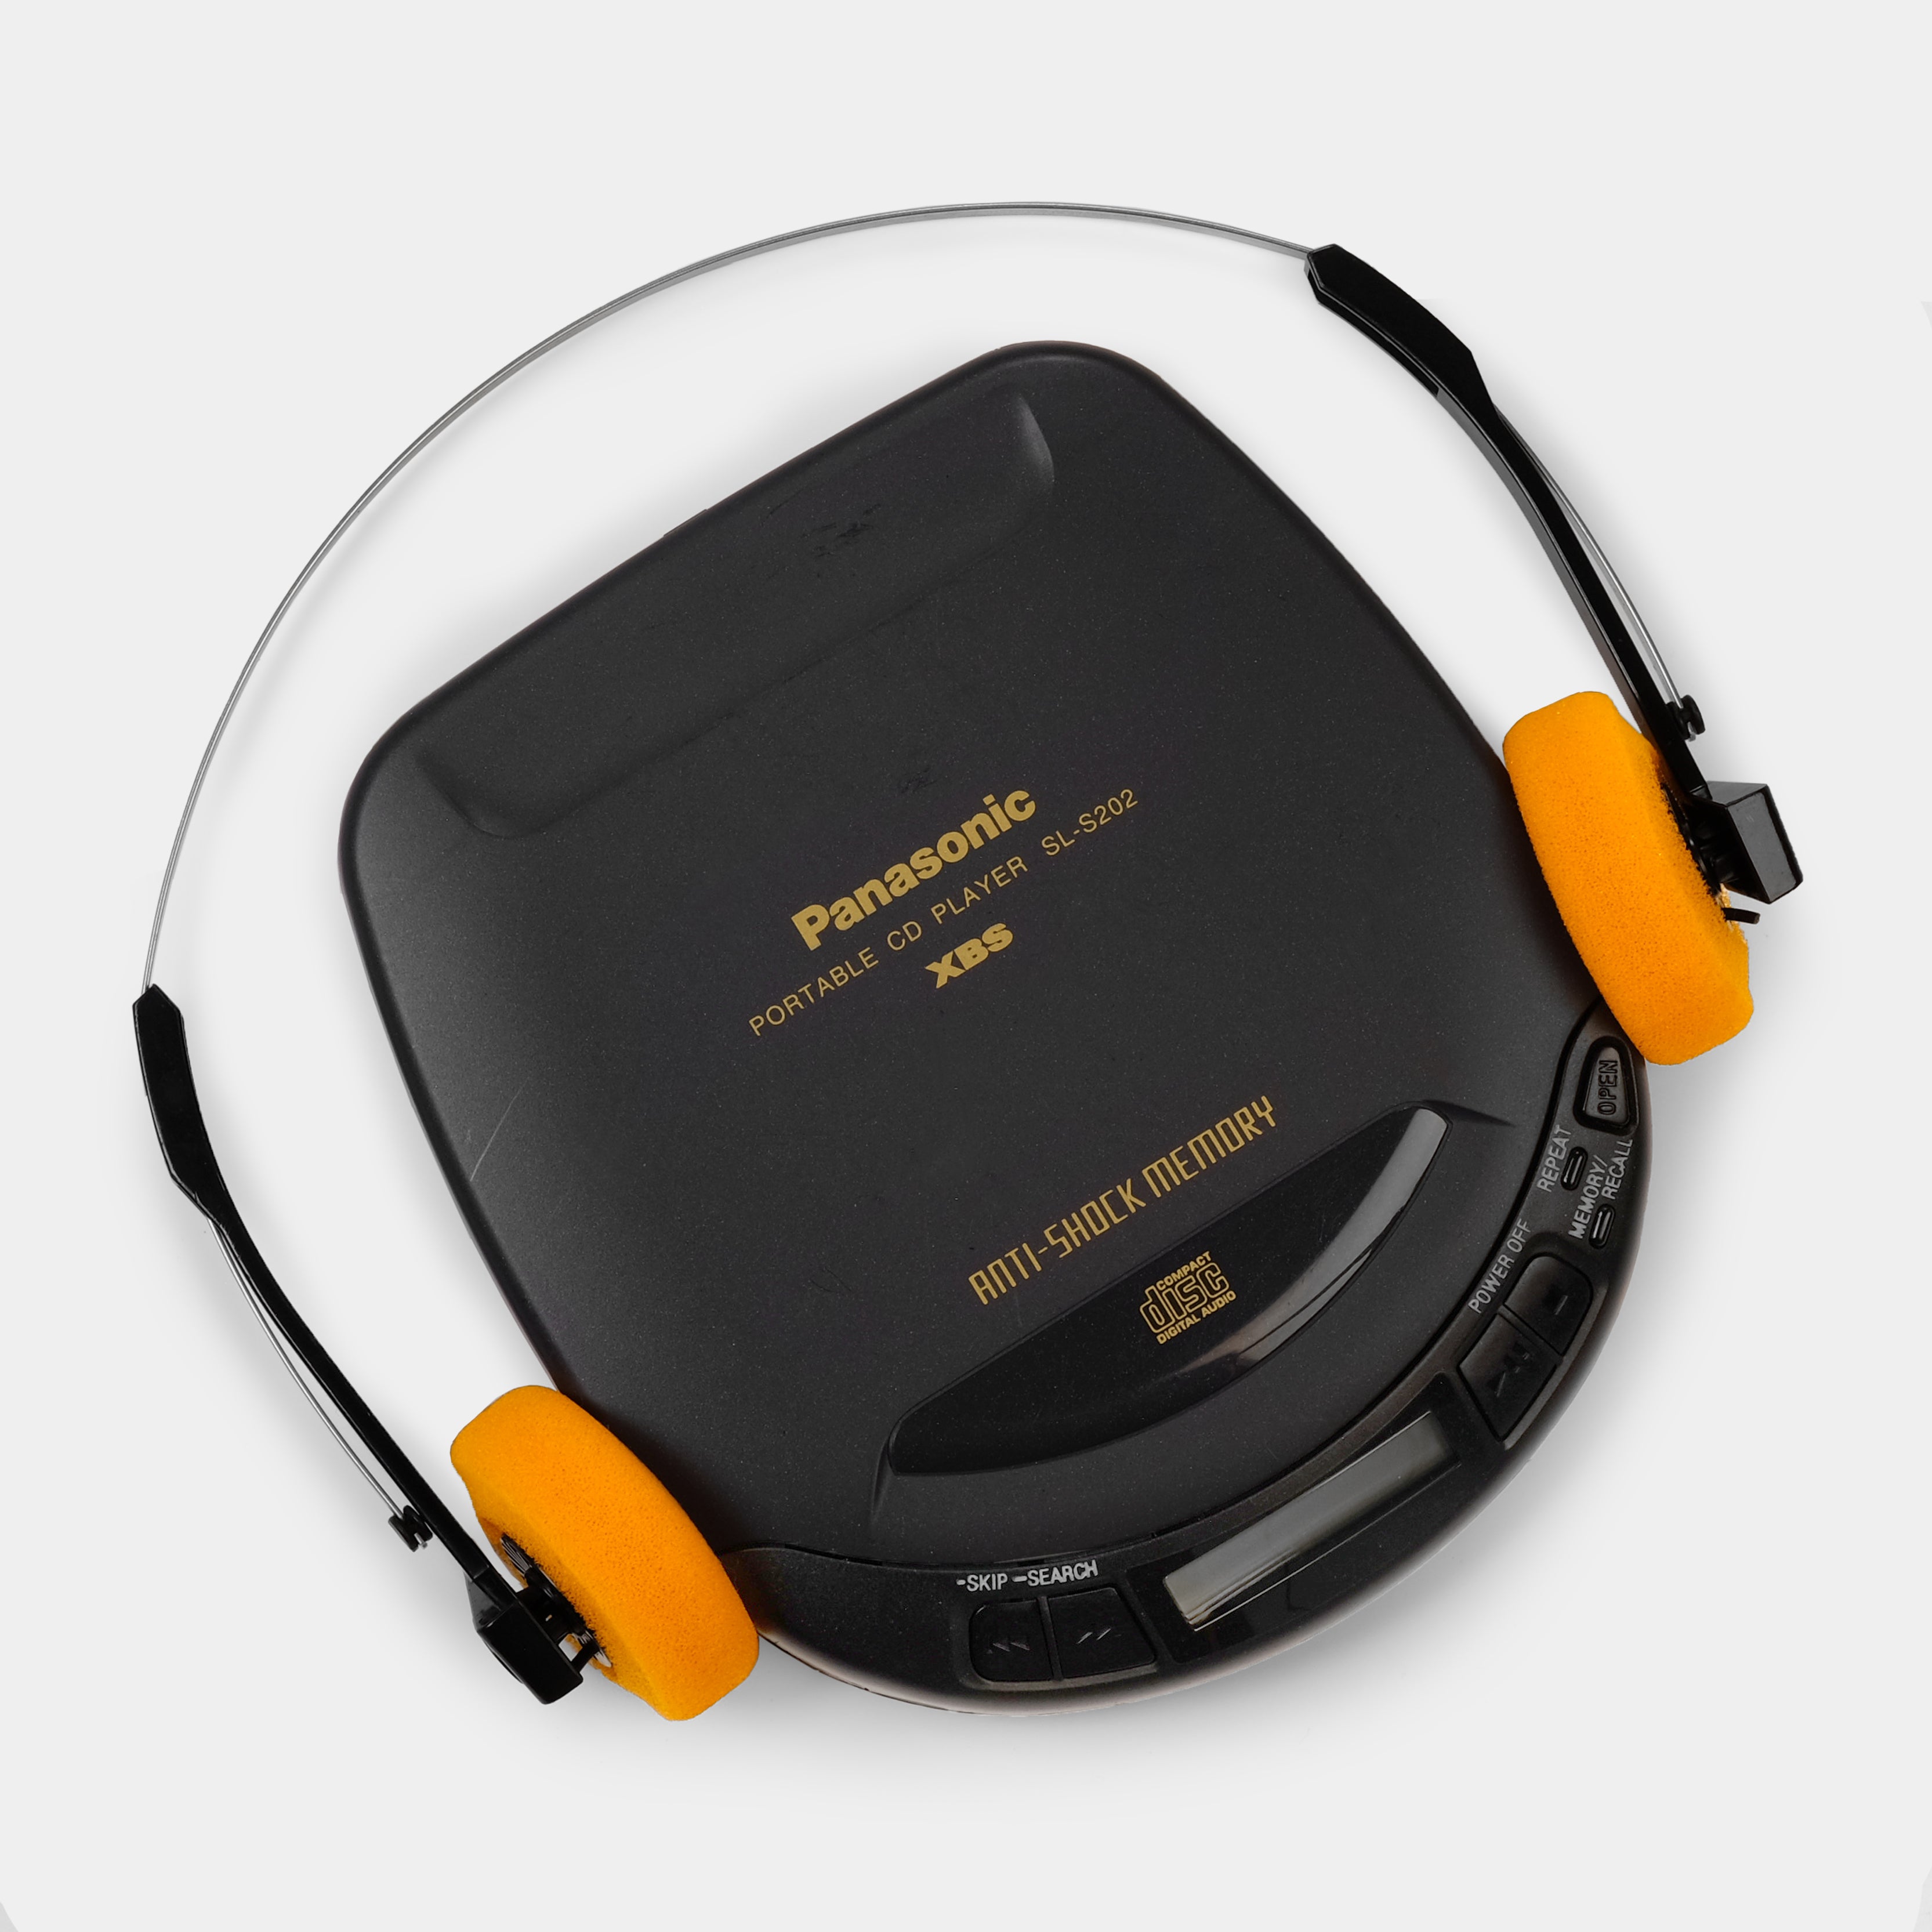 Panasonic XBS SL-S202 Portable CD Player